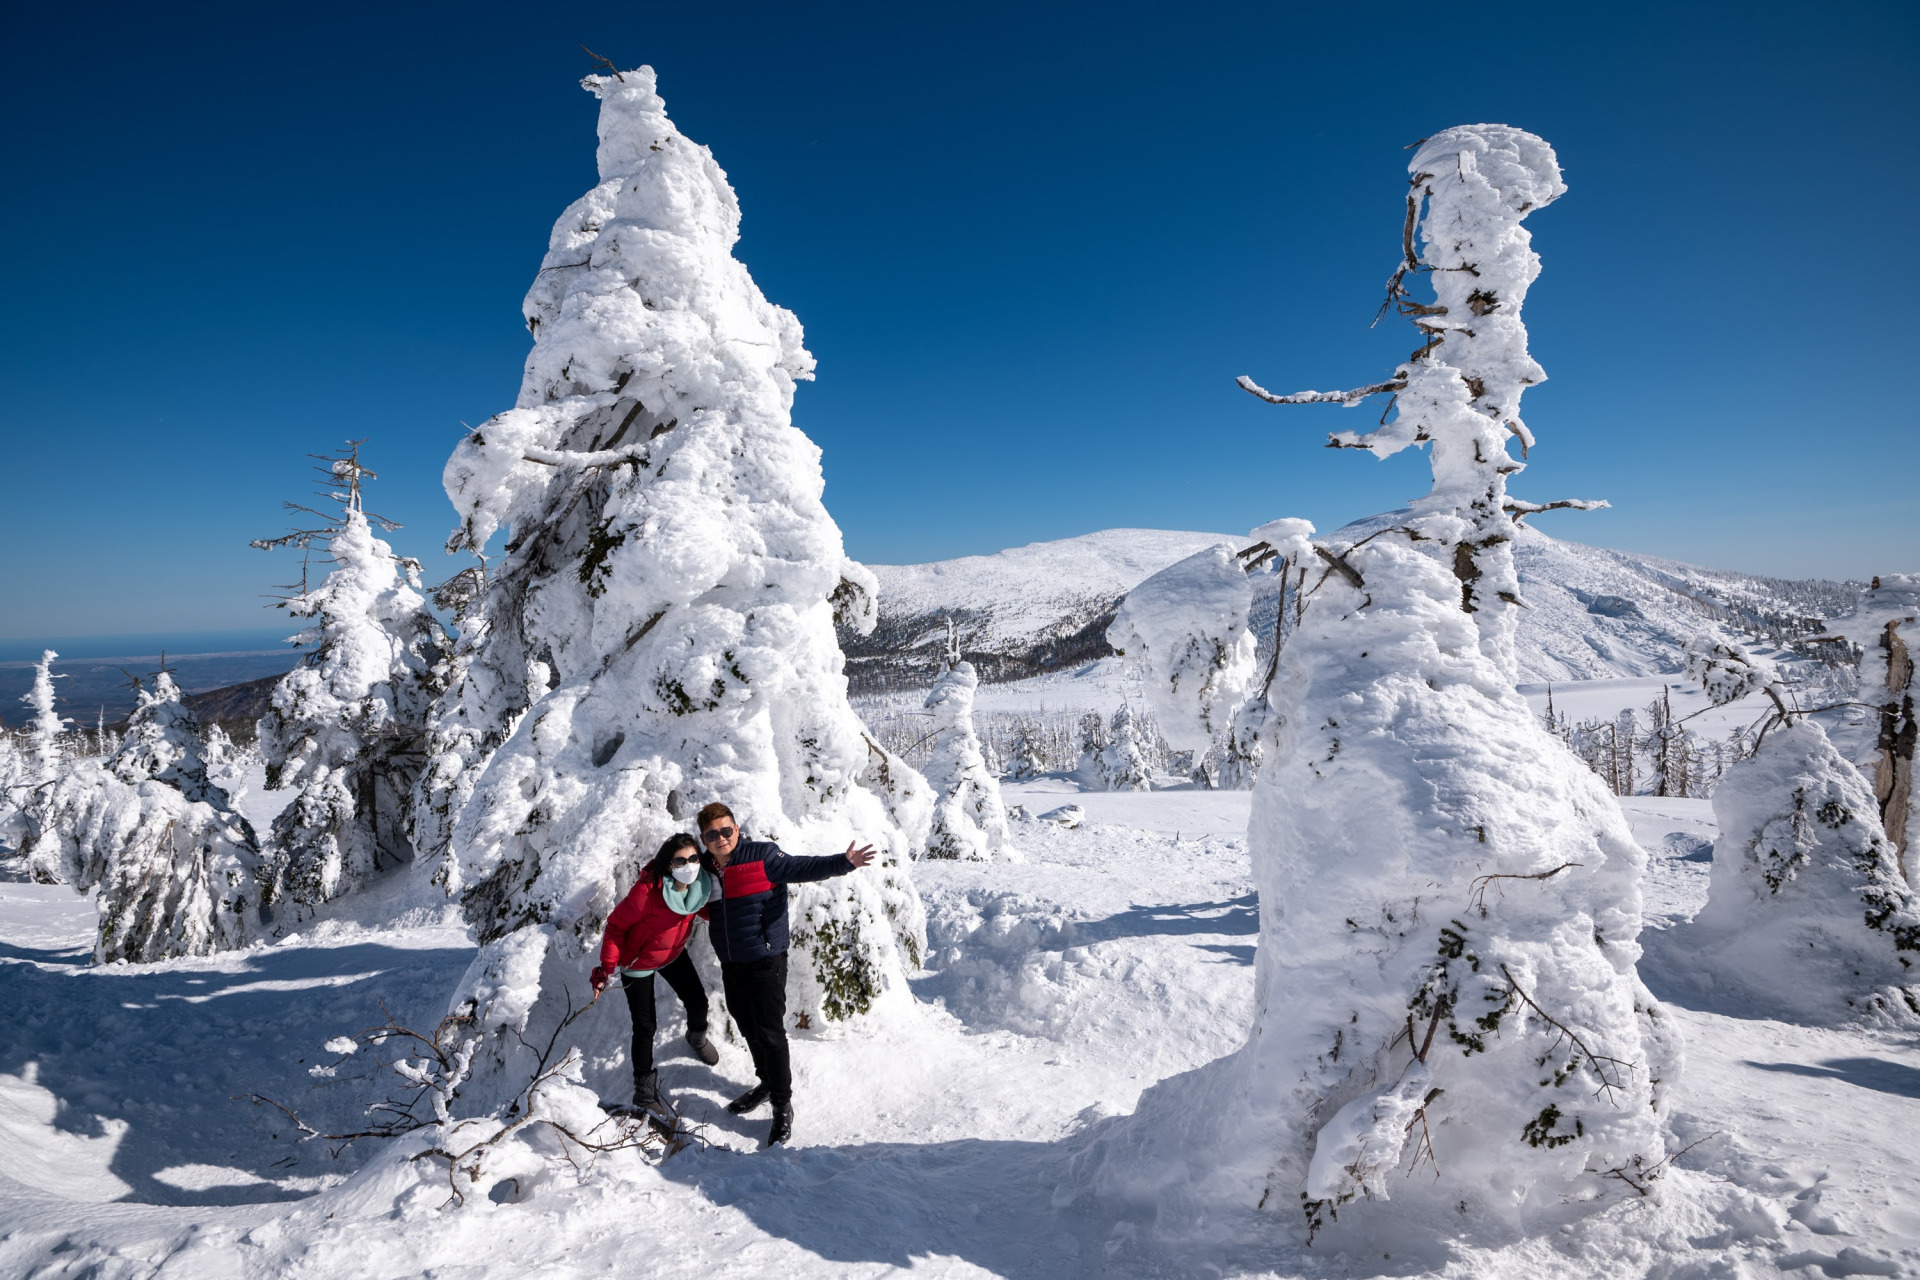 ■冬天要踏雪寻“怪”趣！我们一起去寻找被称为“冰雪怪兽”的藏王树冰吧！它们遍布藏王山，形成一幅壮观的雪景，是我们绝不能错过的冬季自然奇景。